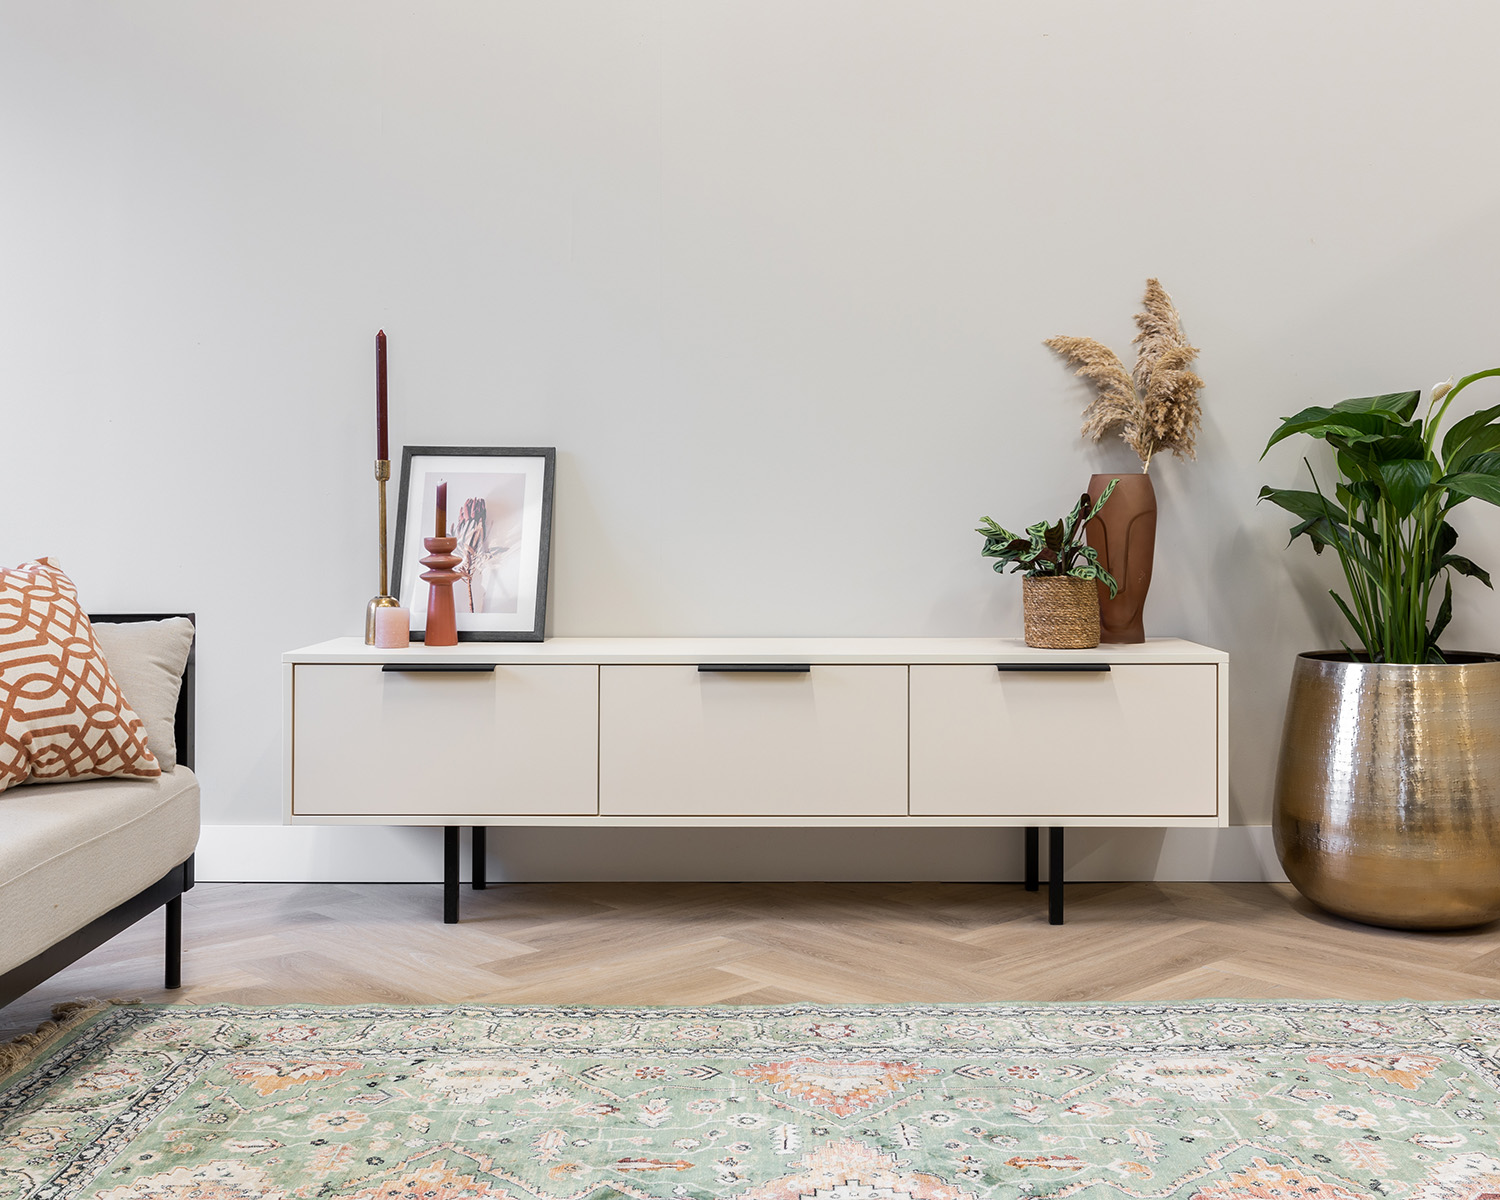 WOME tv-meubels | Scandinavisch tv-meubel | Eclectisch interieur | Minimalistische woonstijl | Luxe tv-meubel | Maatwerk meubel | Interieuradvies | Tv-meubel zwart | Tv-meubel hout | Tv dressoir